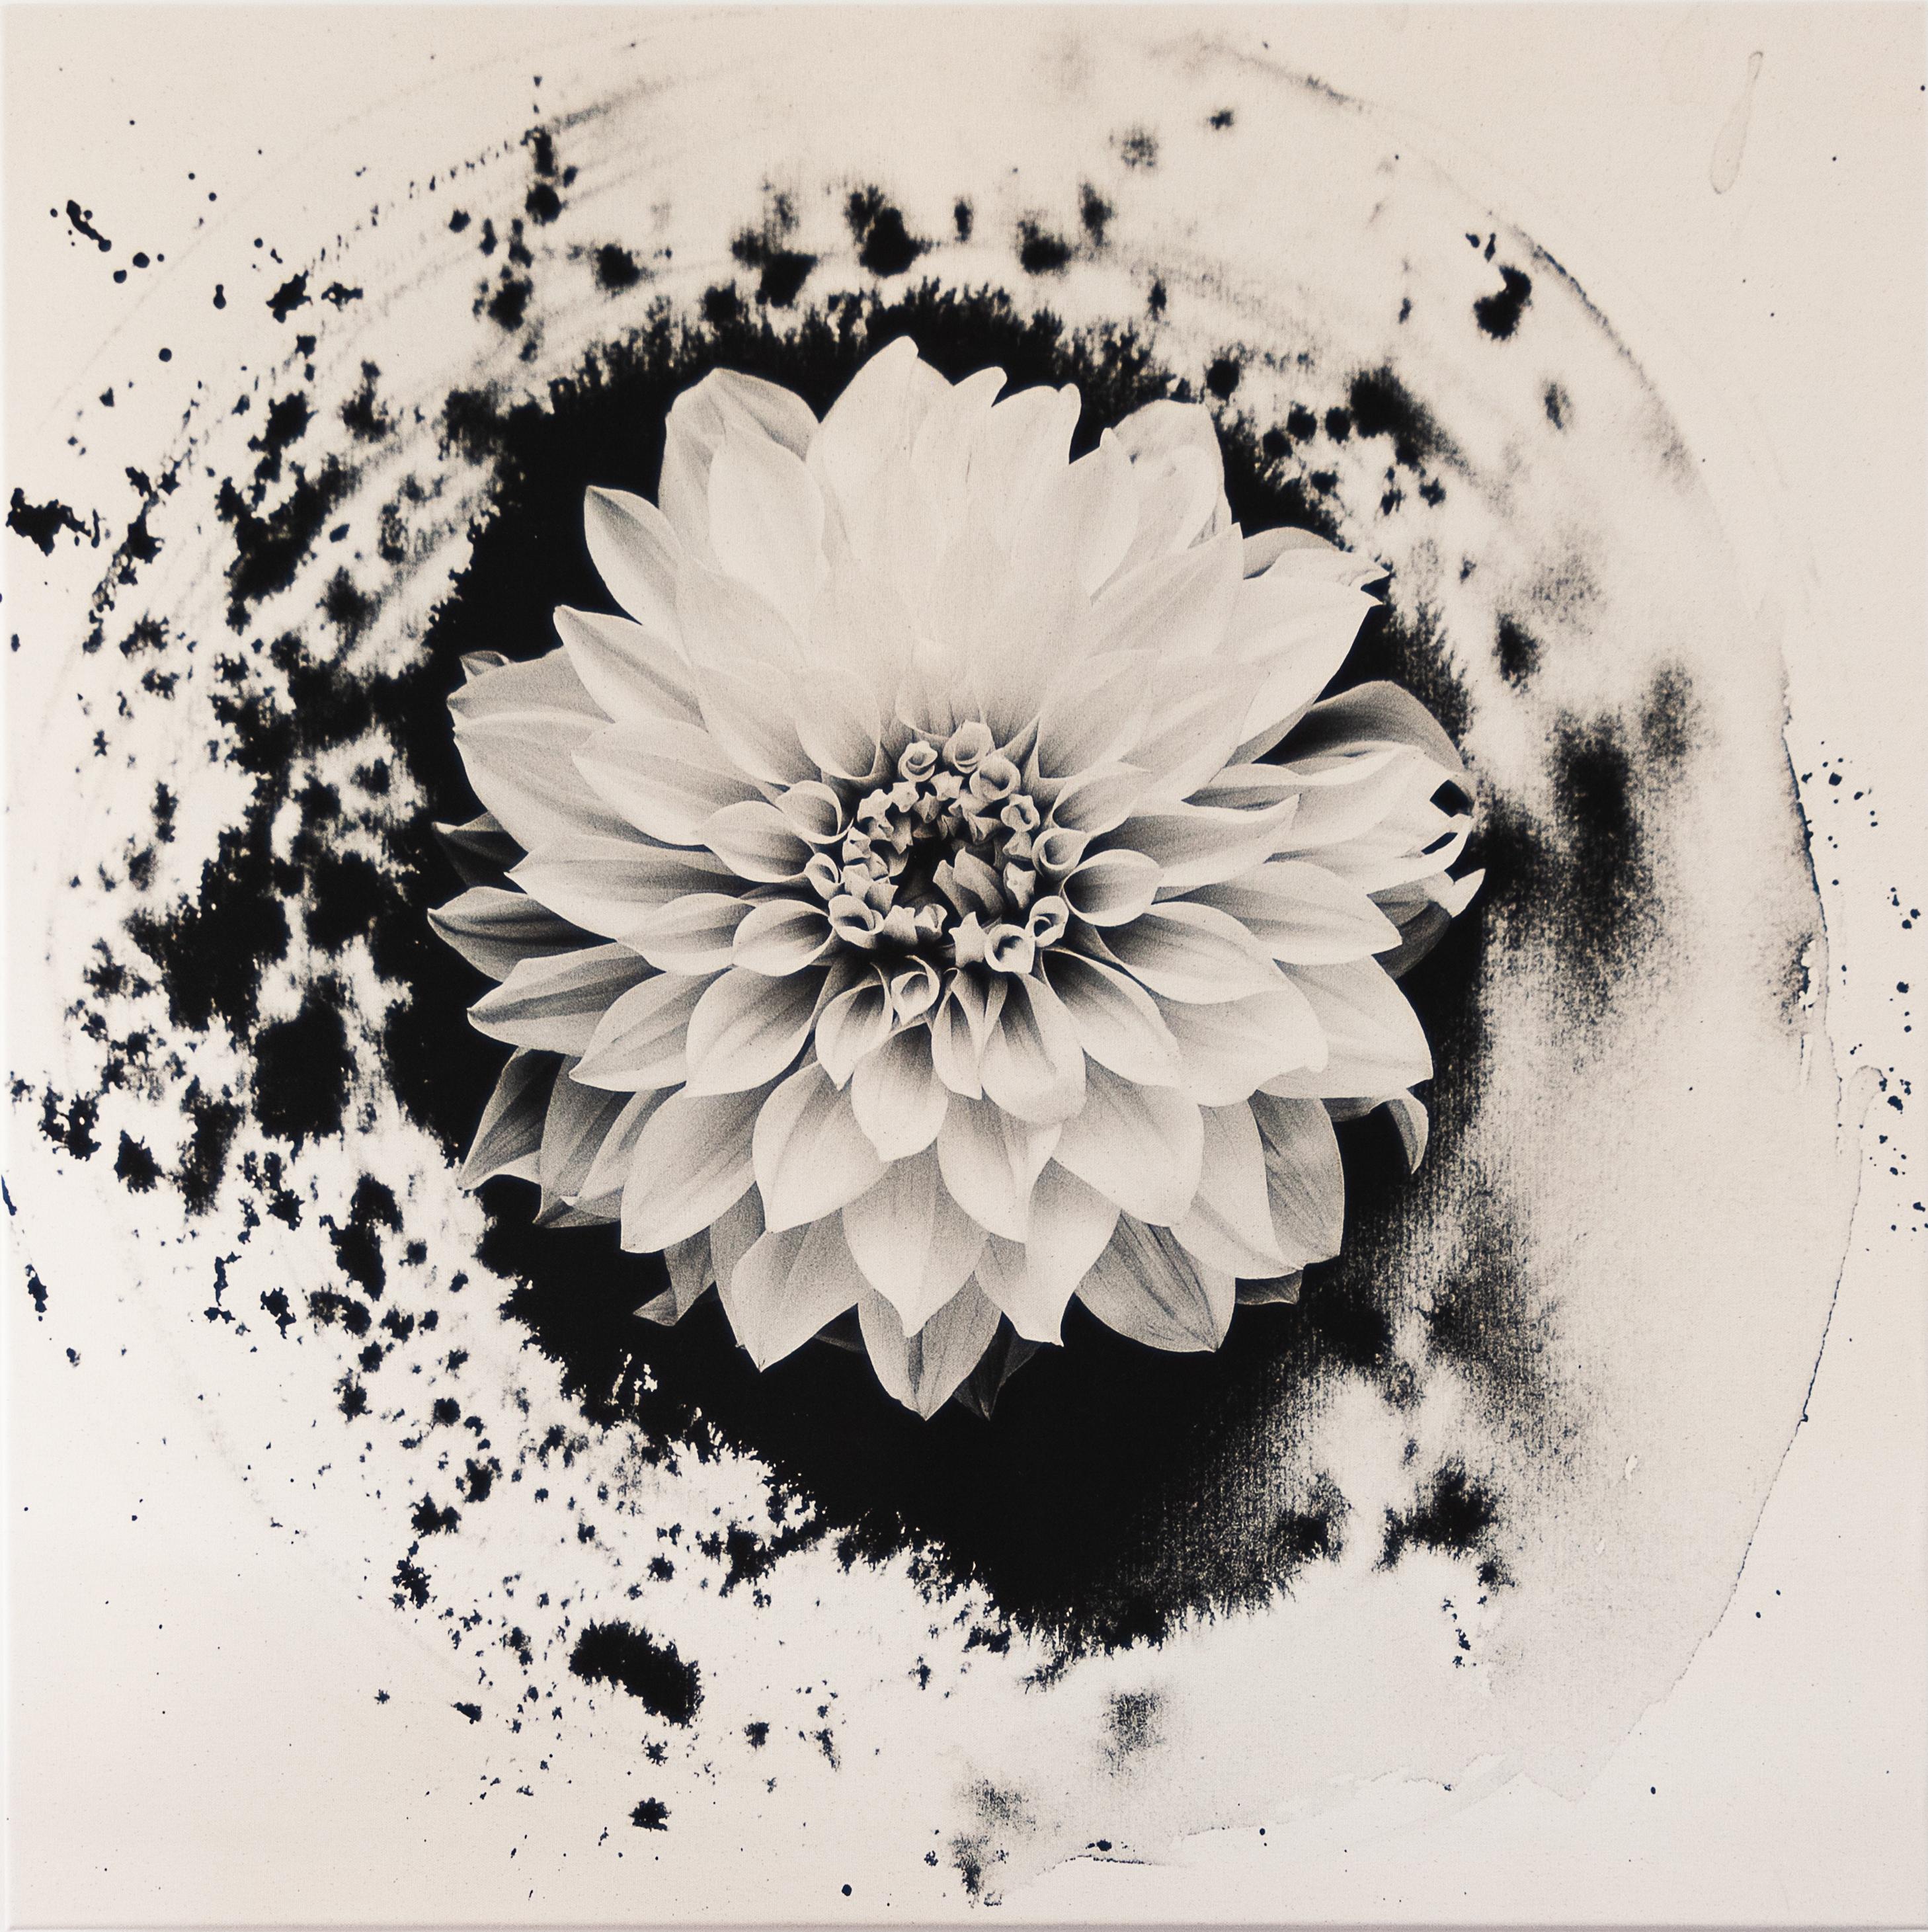 Abstract Painting Ugne Pouwell - Dahlia sur encre - photographie de film florale sur toile de coton, édition limitée à 5 exemplaires